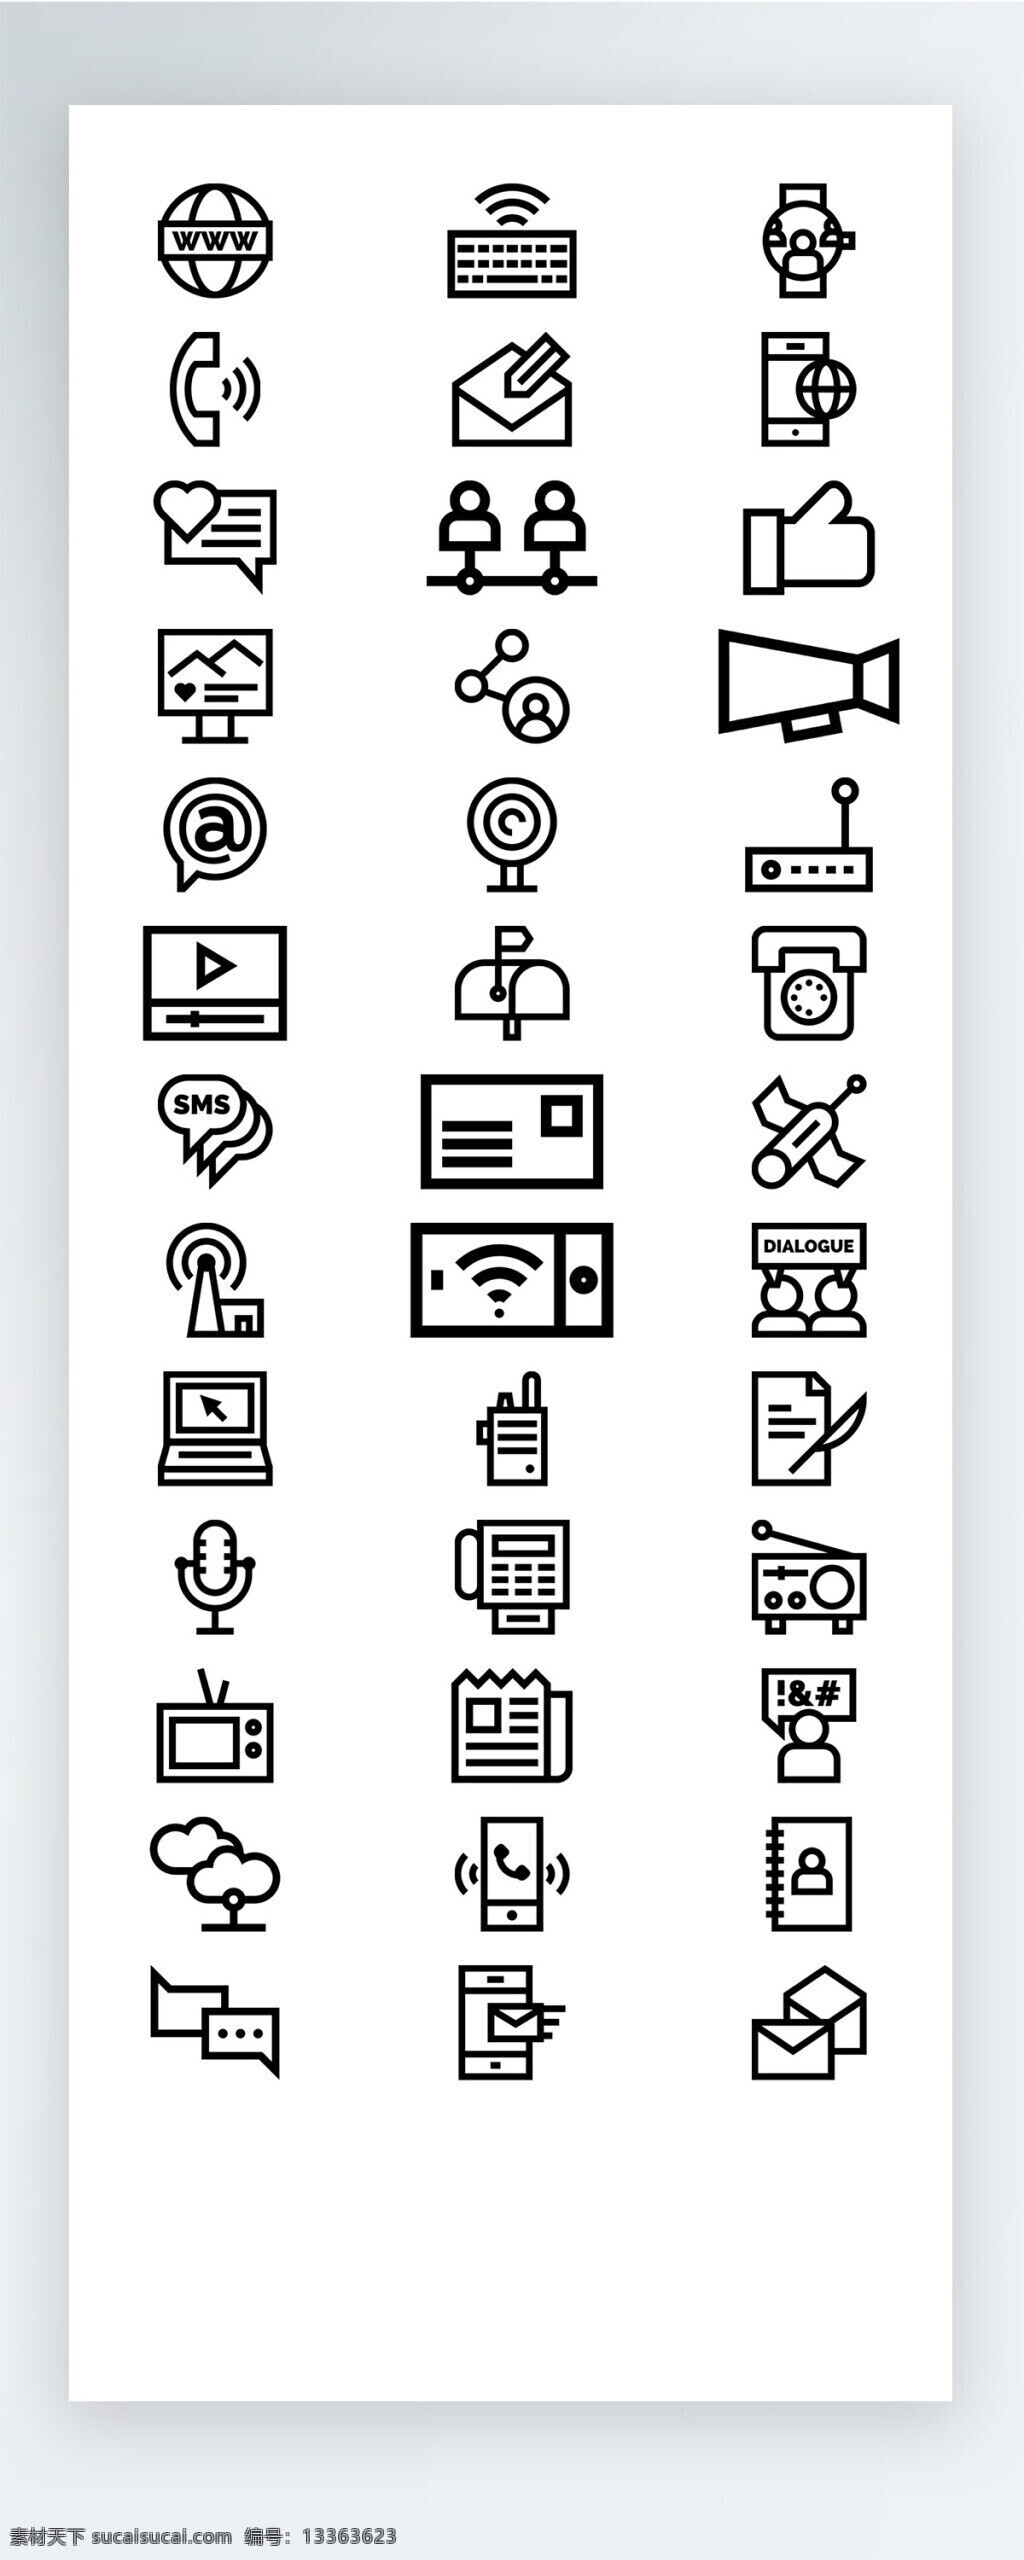 线性 通讯 工作 生活 图标 矢量 icon icon图标 ui 手机 拟物 社交 购物 工具 电话 娱乐 休闲